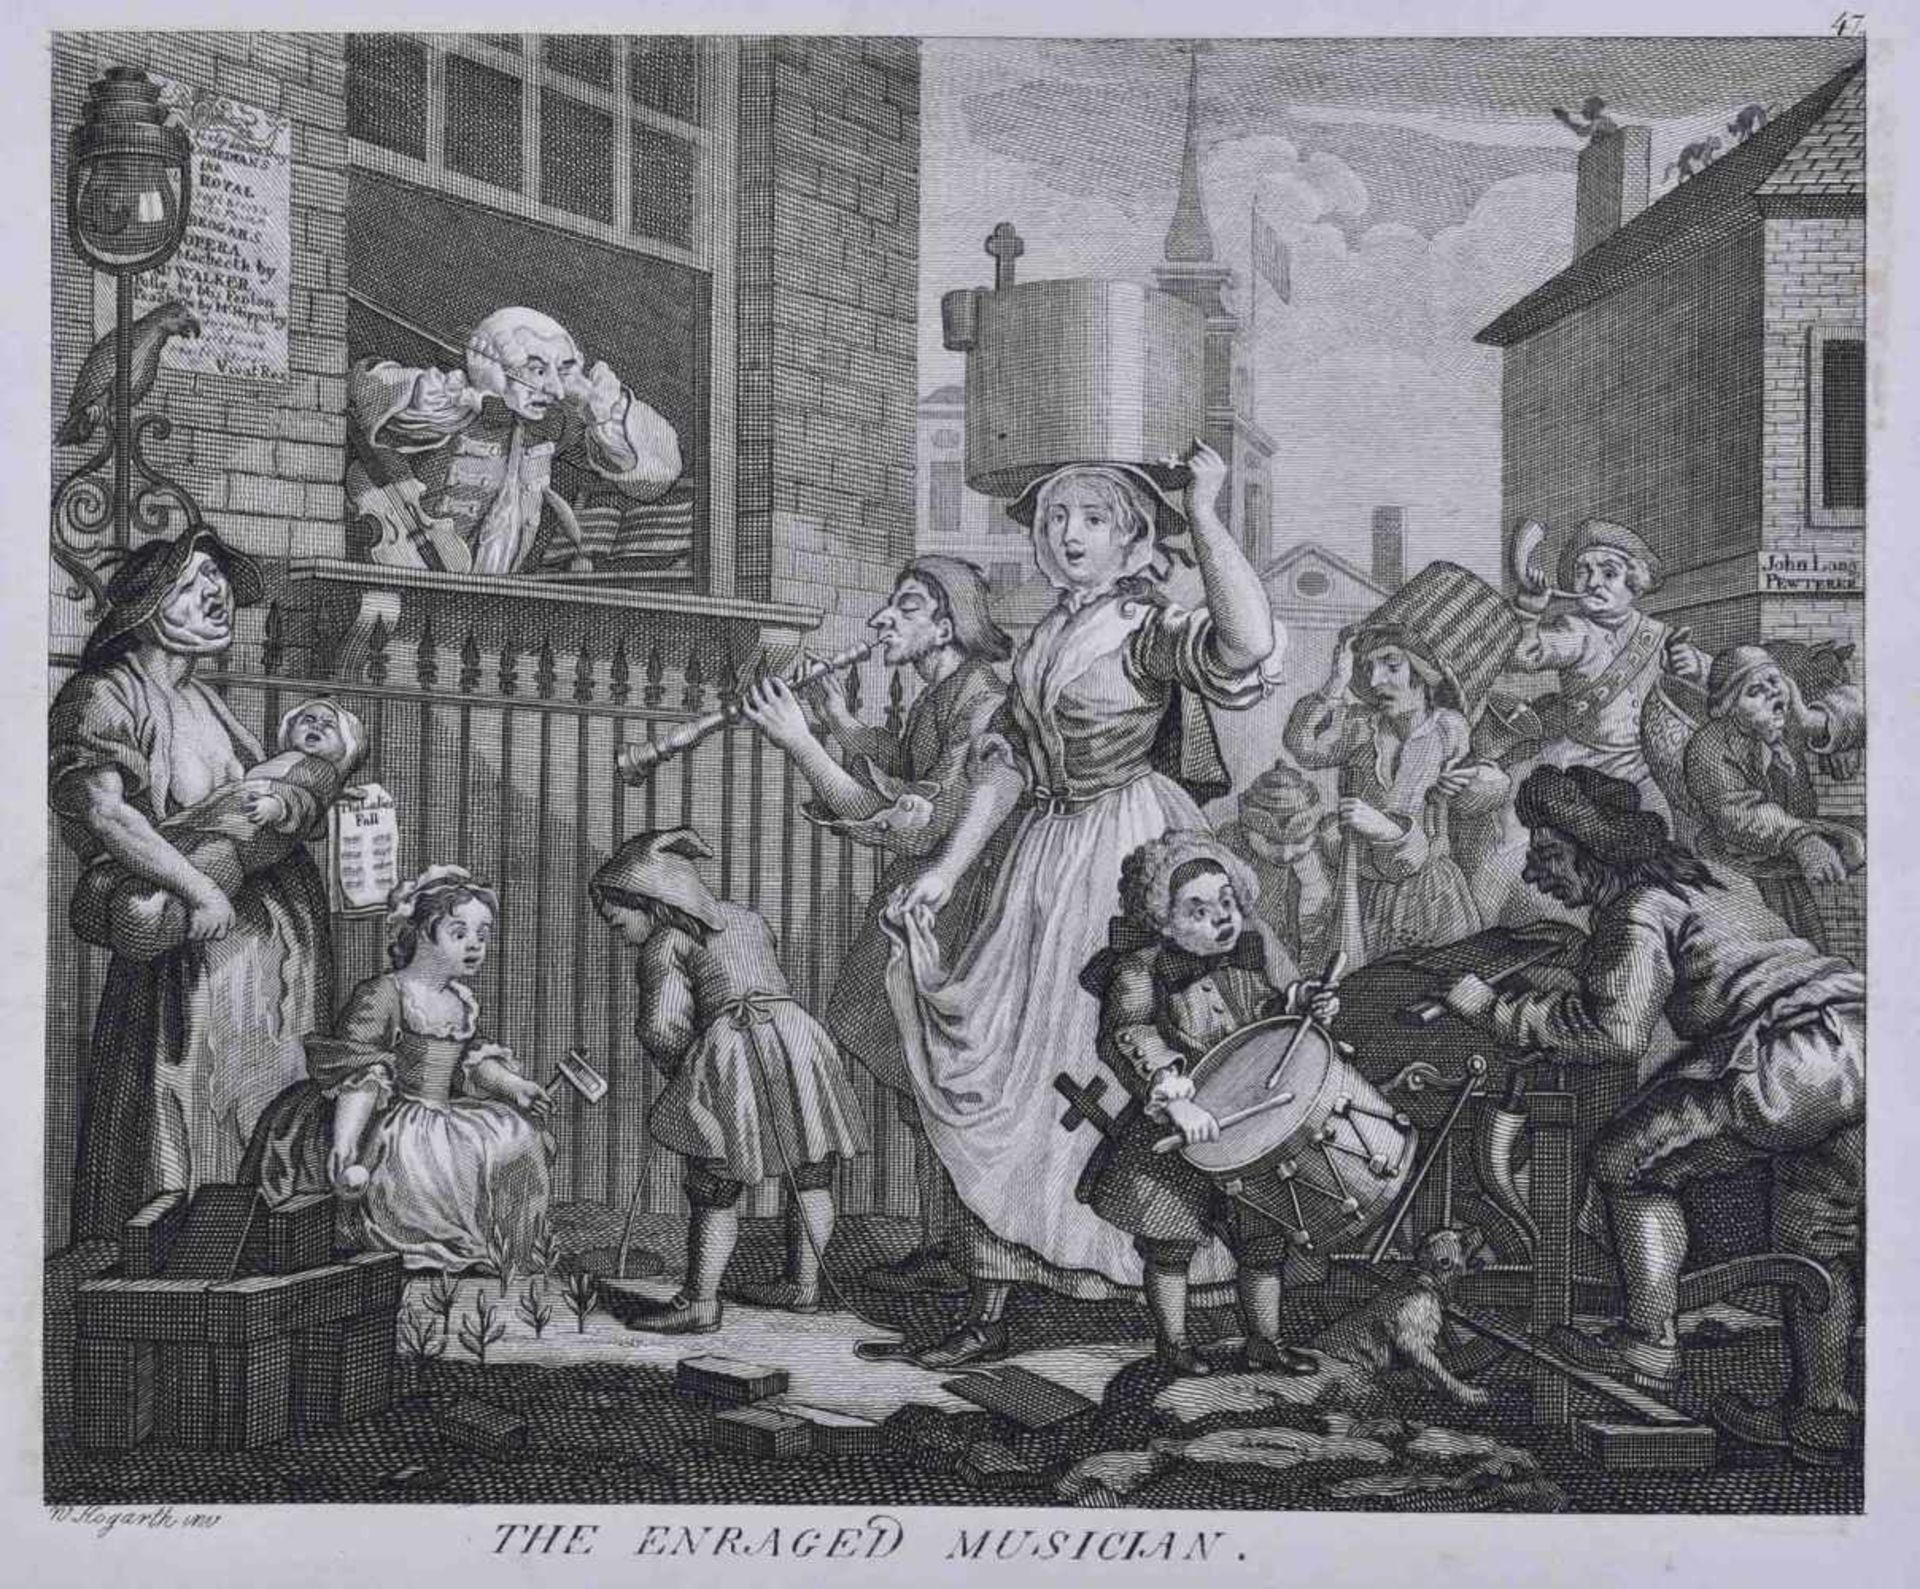 William HOGARTH (1697-1764)"The Enraged Musician"Grafik-Kupferstich, 19,5 cm x 26,5 cm,unten